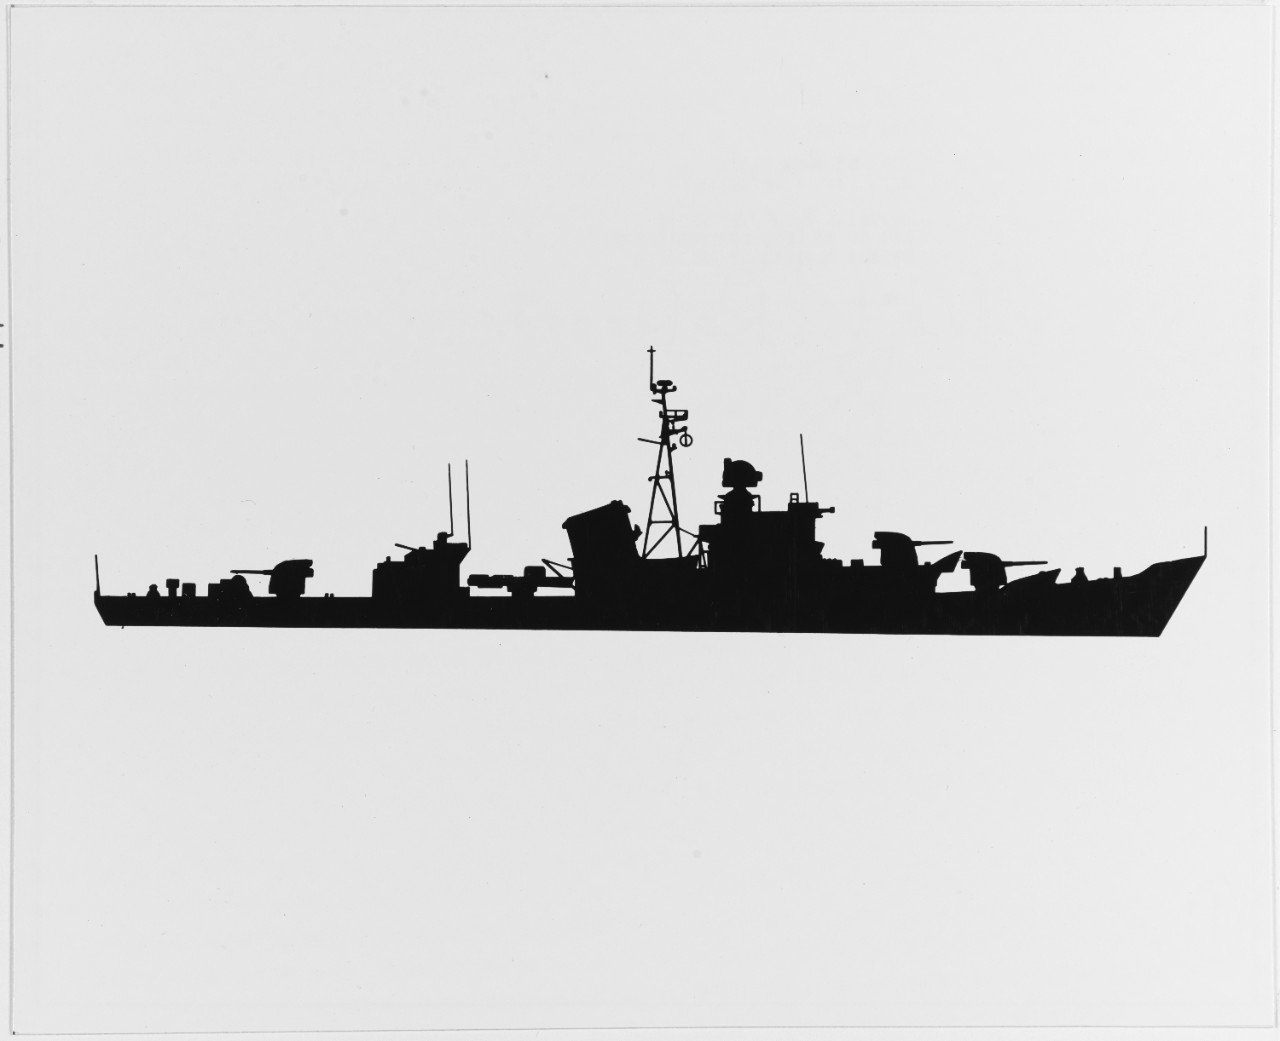 Soviet RIGA Class Frigate (DE), first version